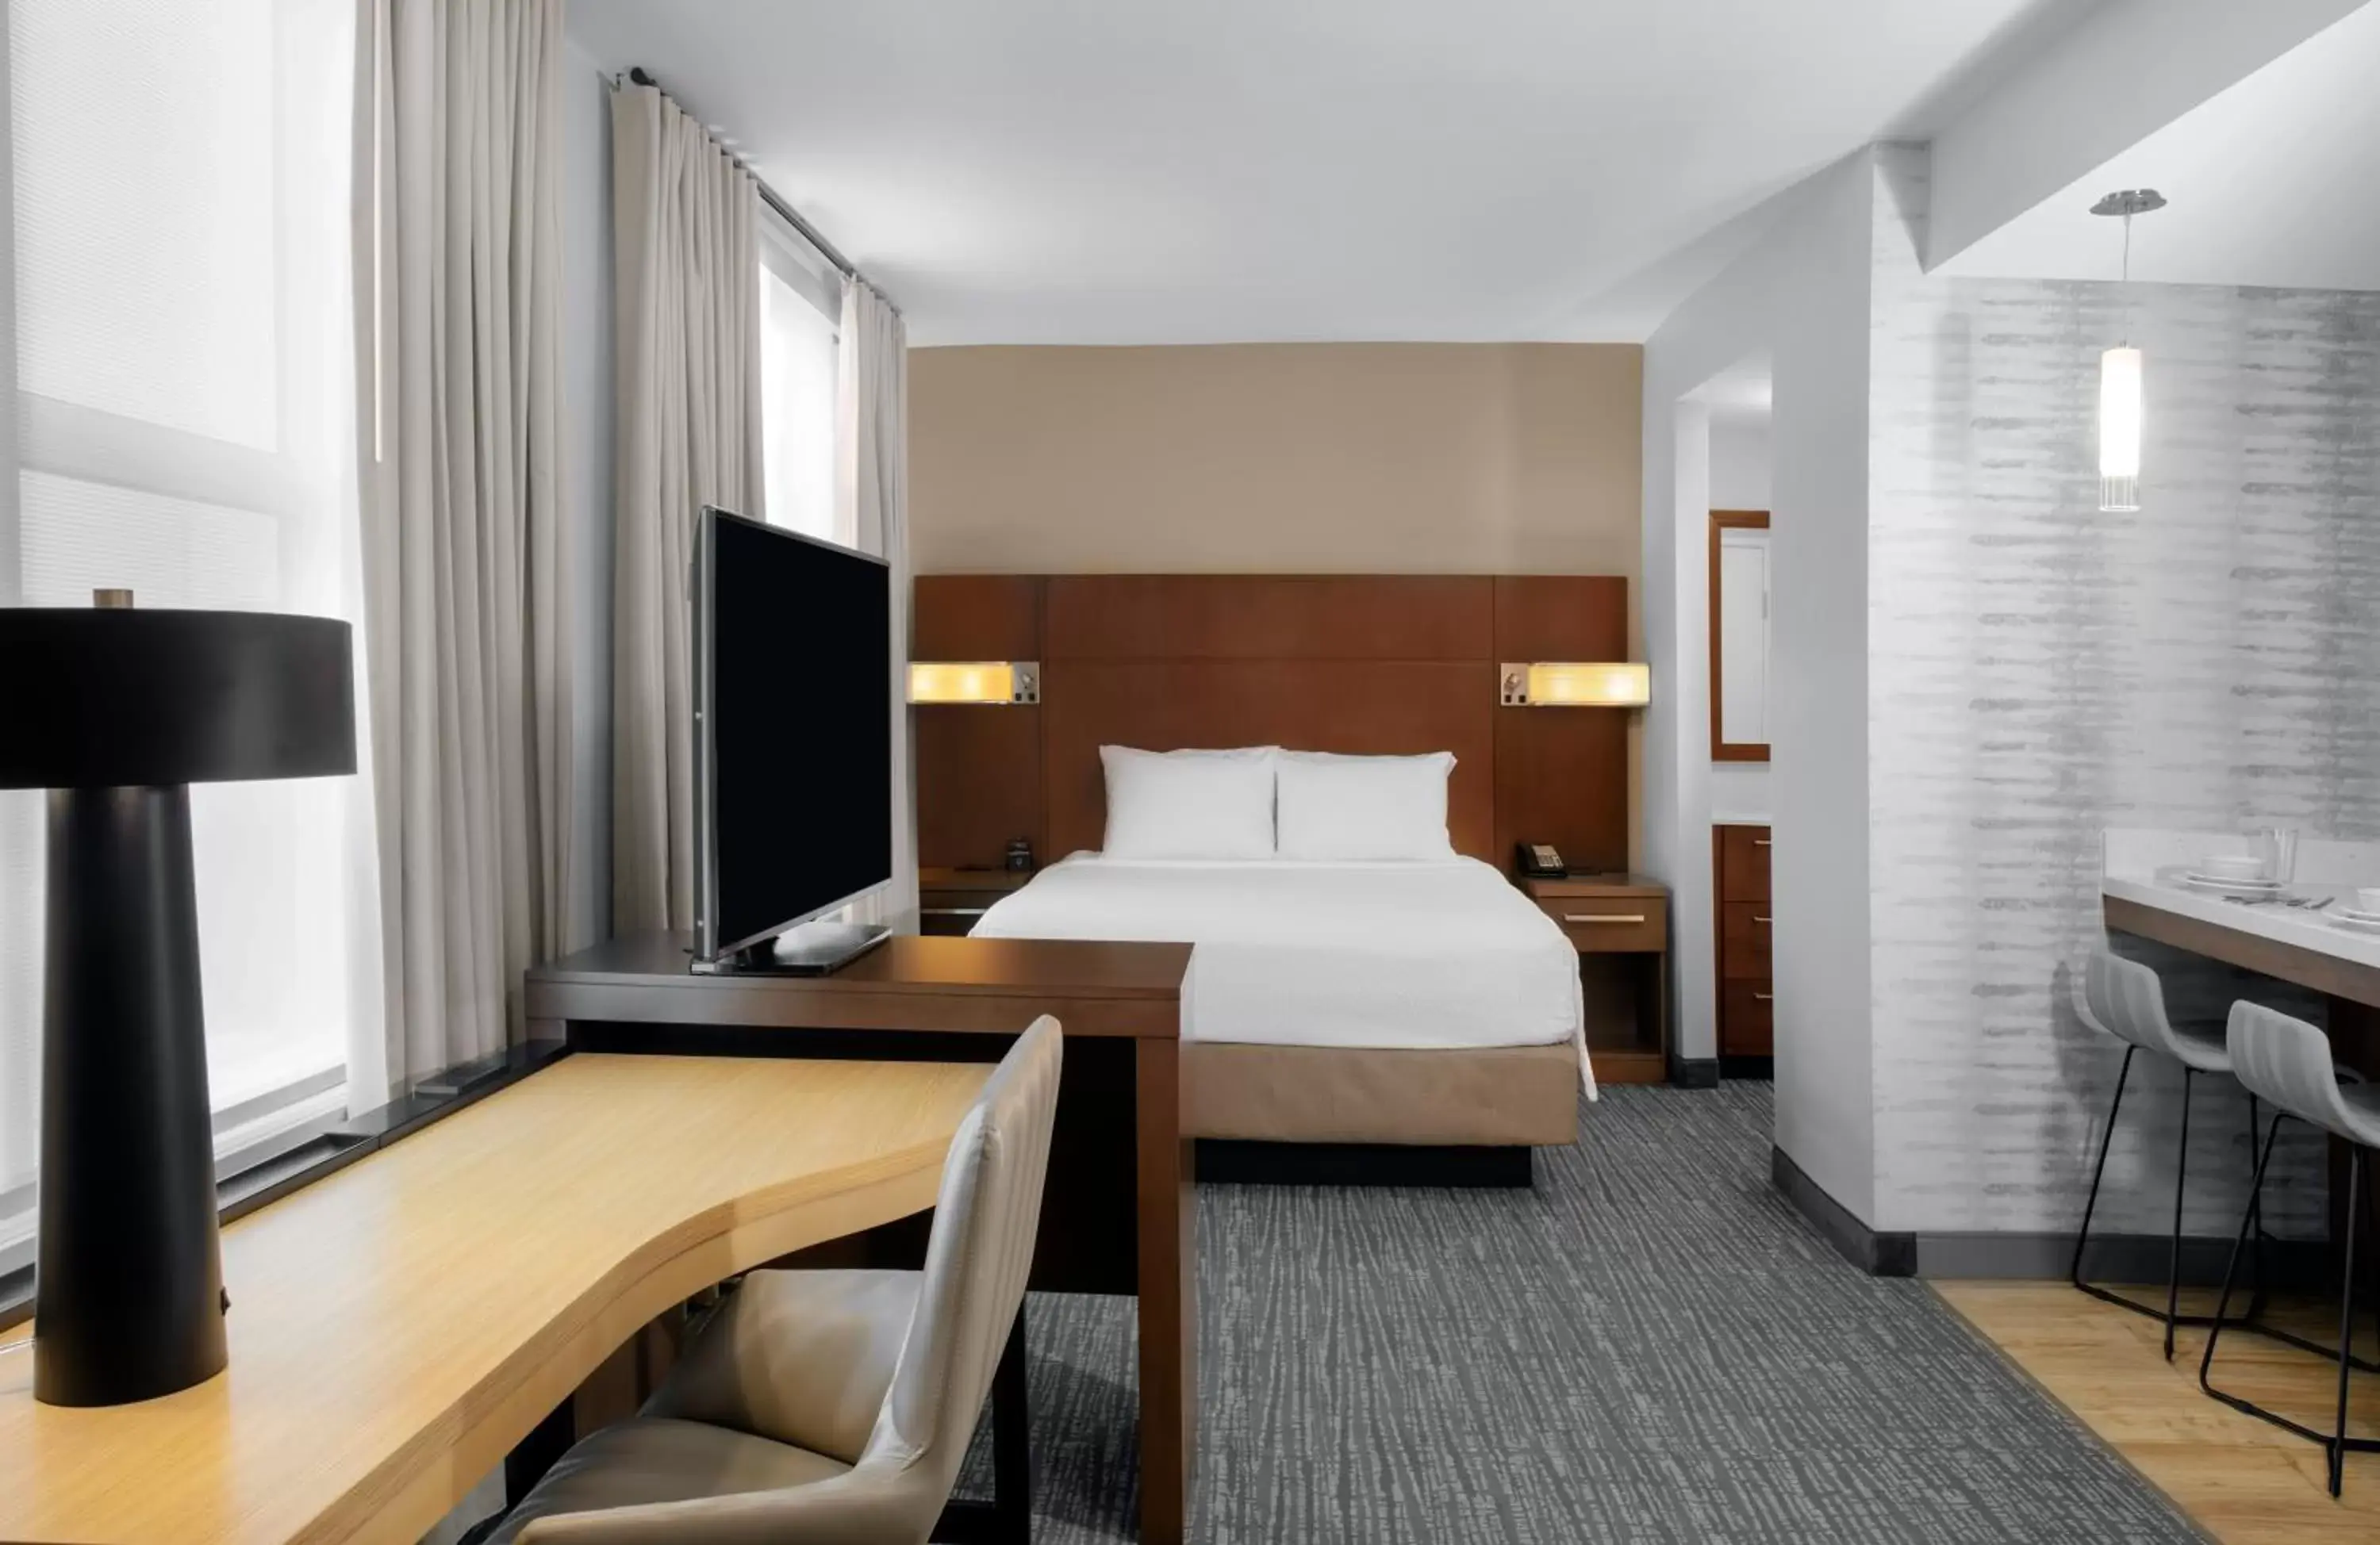 Bed in Residence Inn by Marriott Norwalk